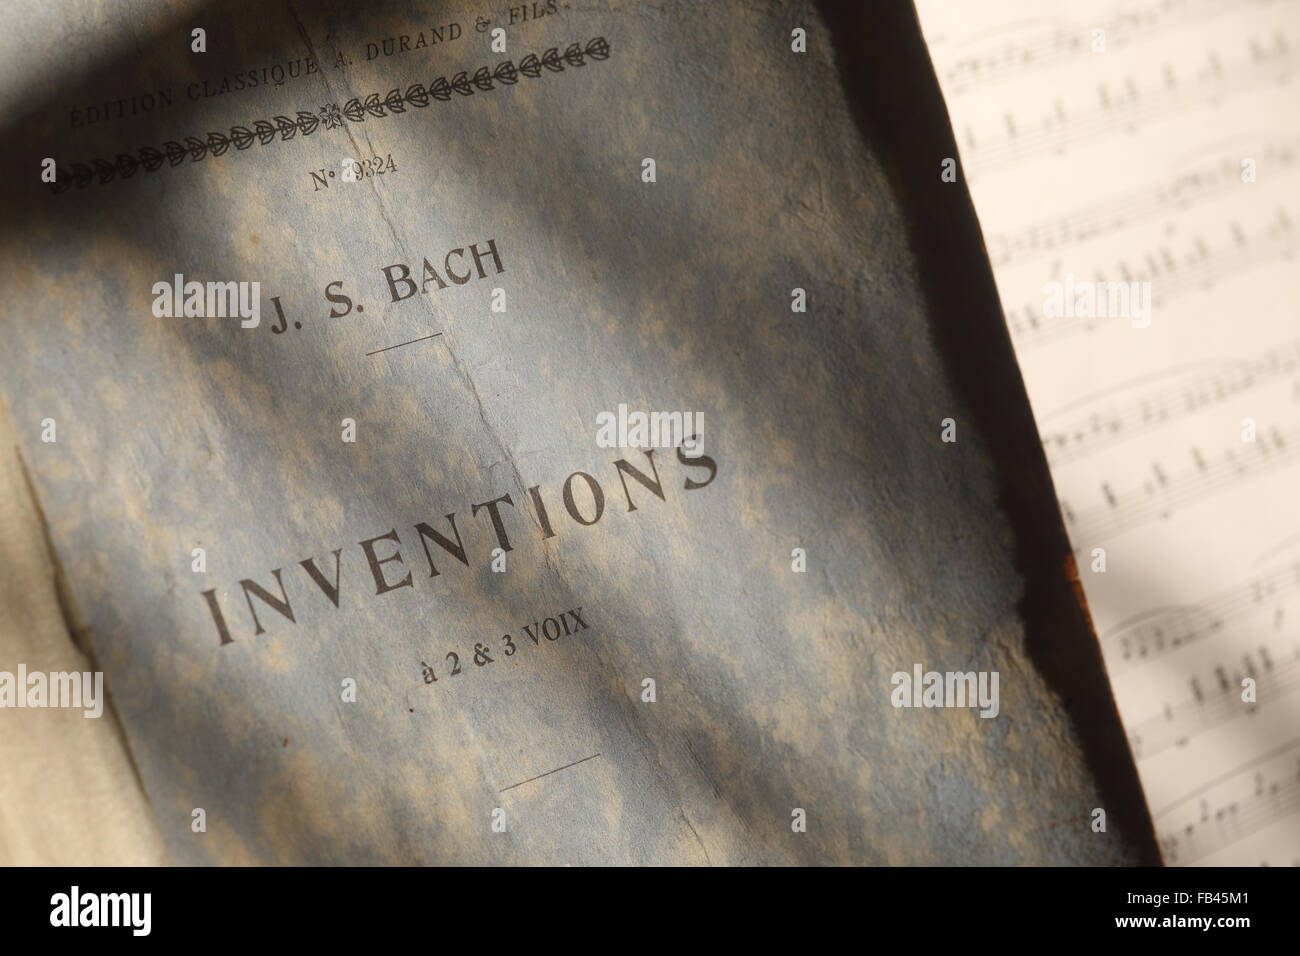 Bach parte dos y tres invenciones Foto de stock